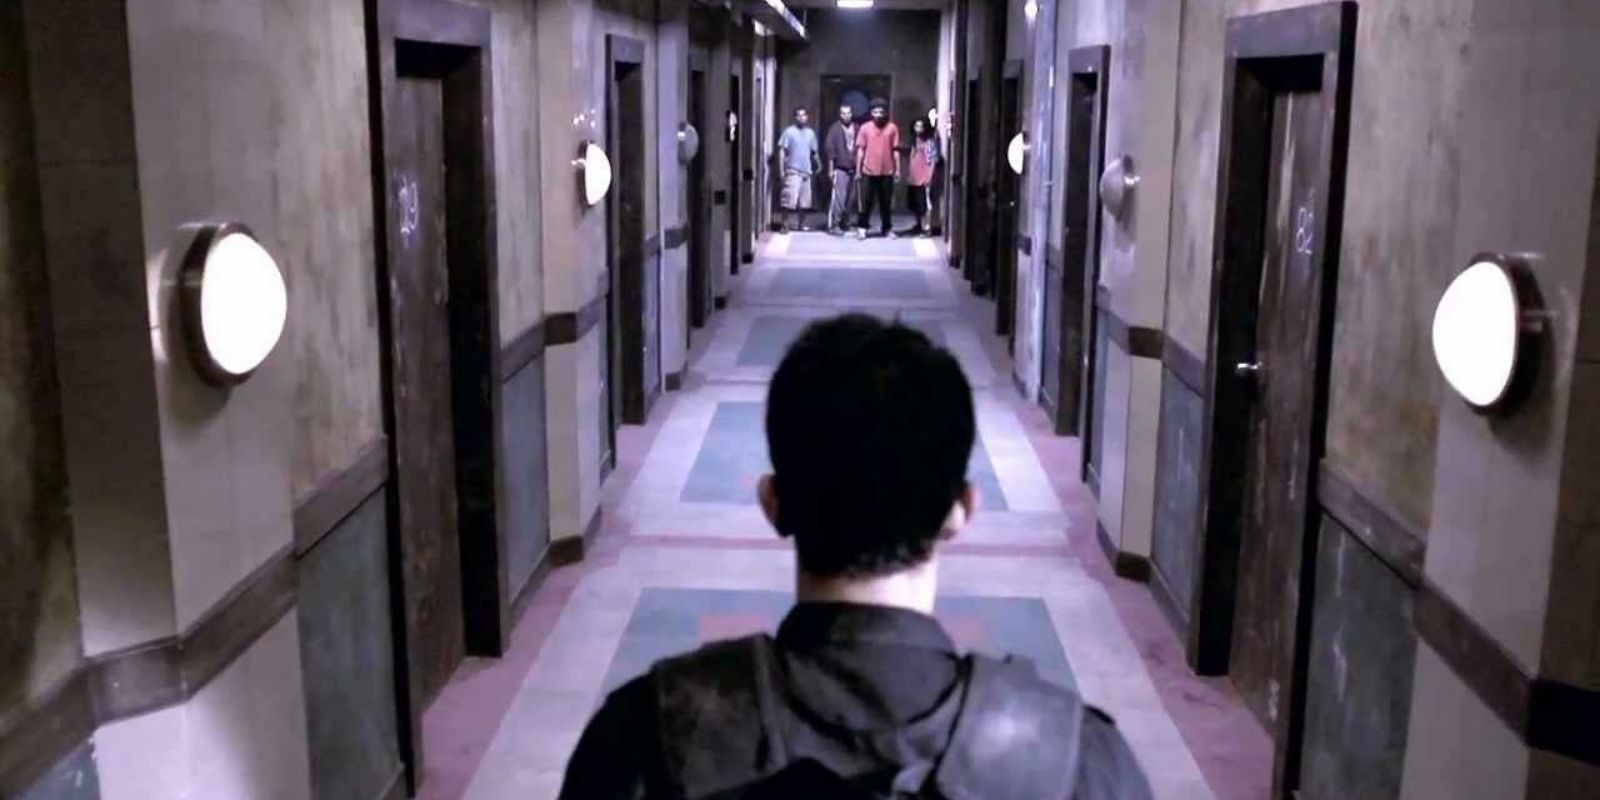 Iko Uwais in hallway scene of The Raid